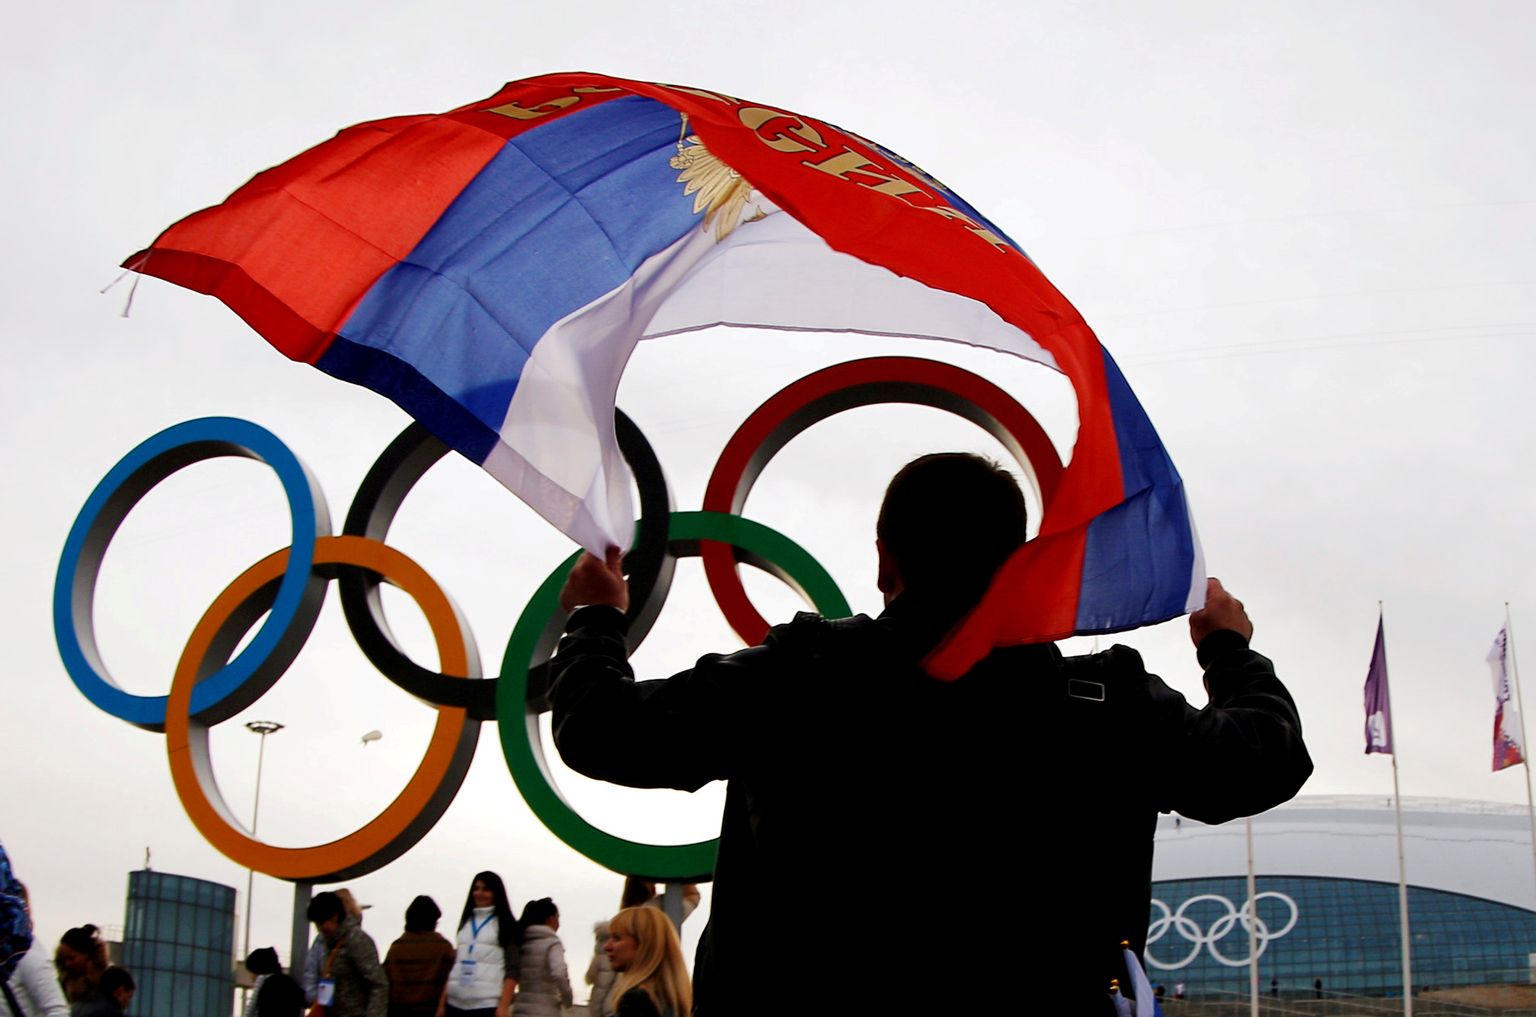 Olümpiarõngad ja Venemaa lipp. Foto on illustratiivne.